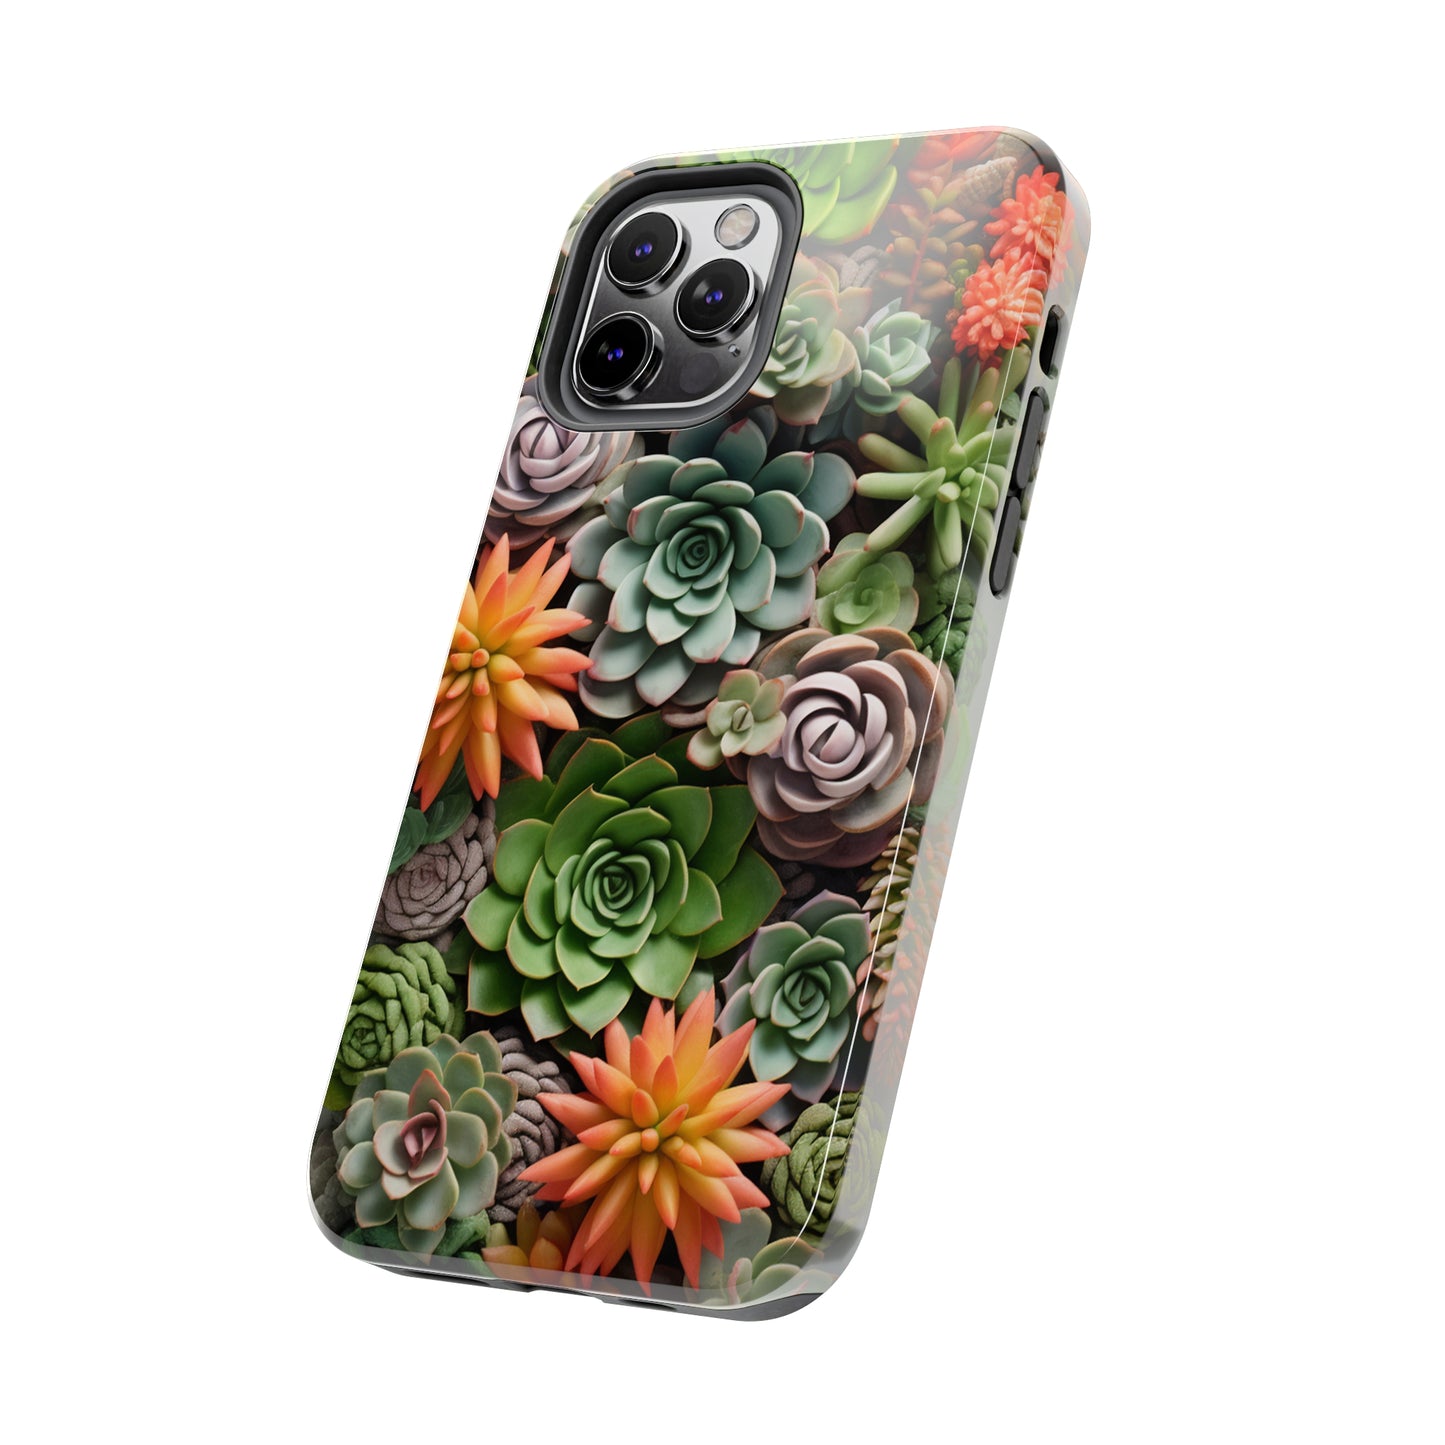 Succulent Cactus iPhone Case